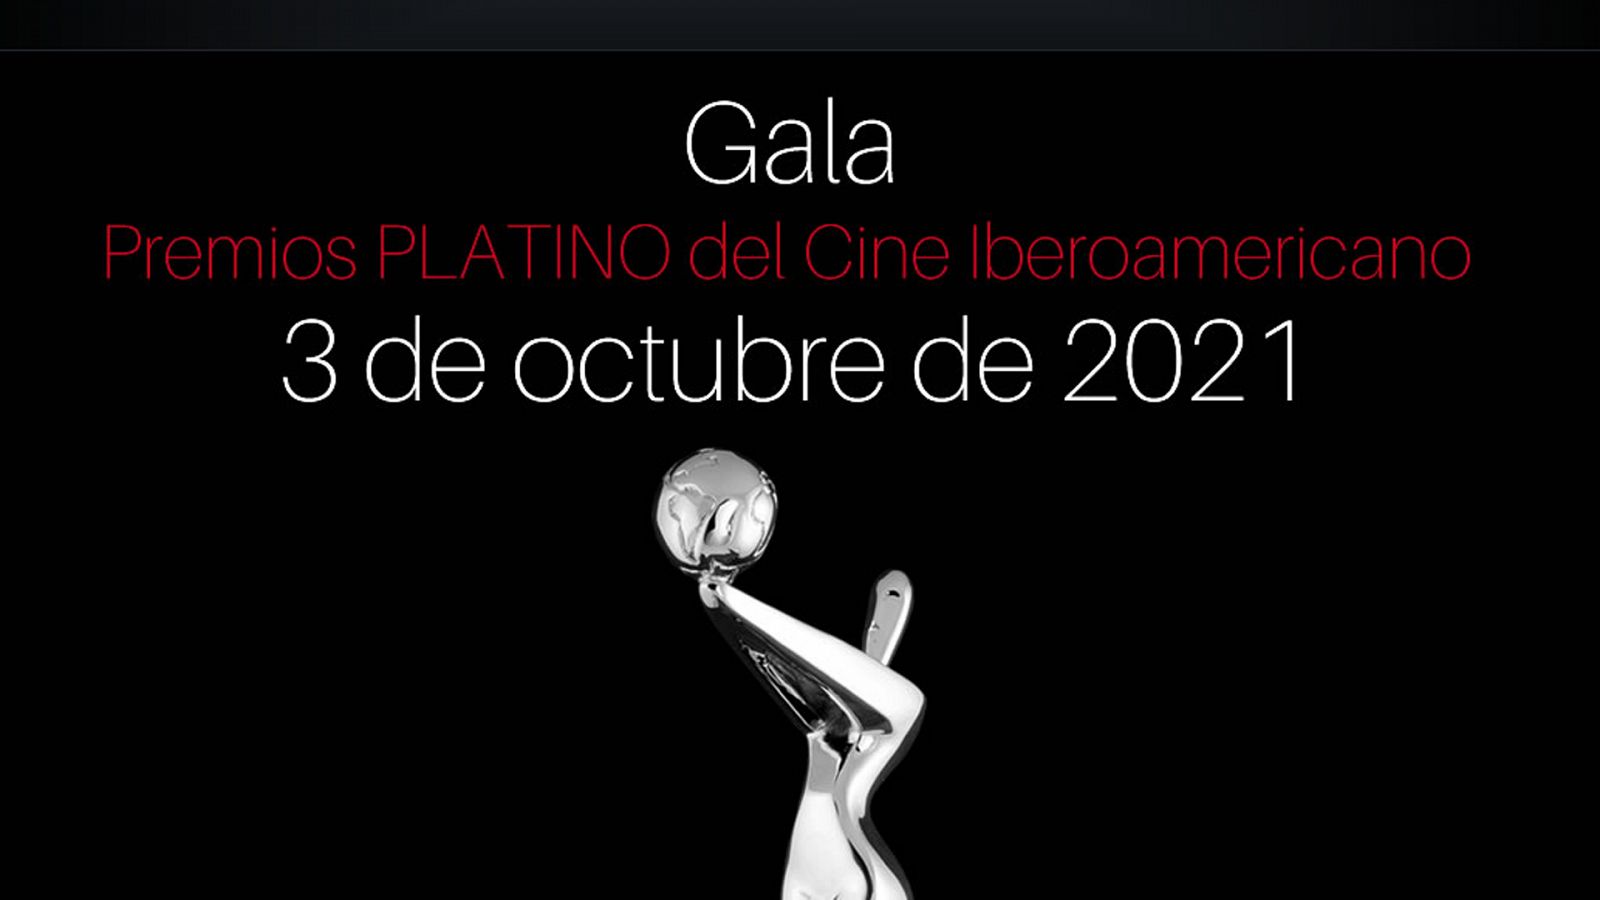  Los Premios Platino del Cine Iberoamericano